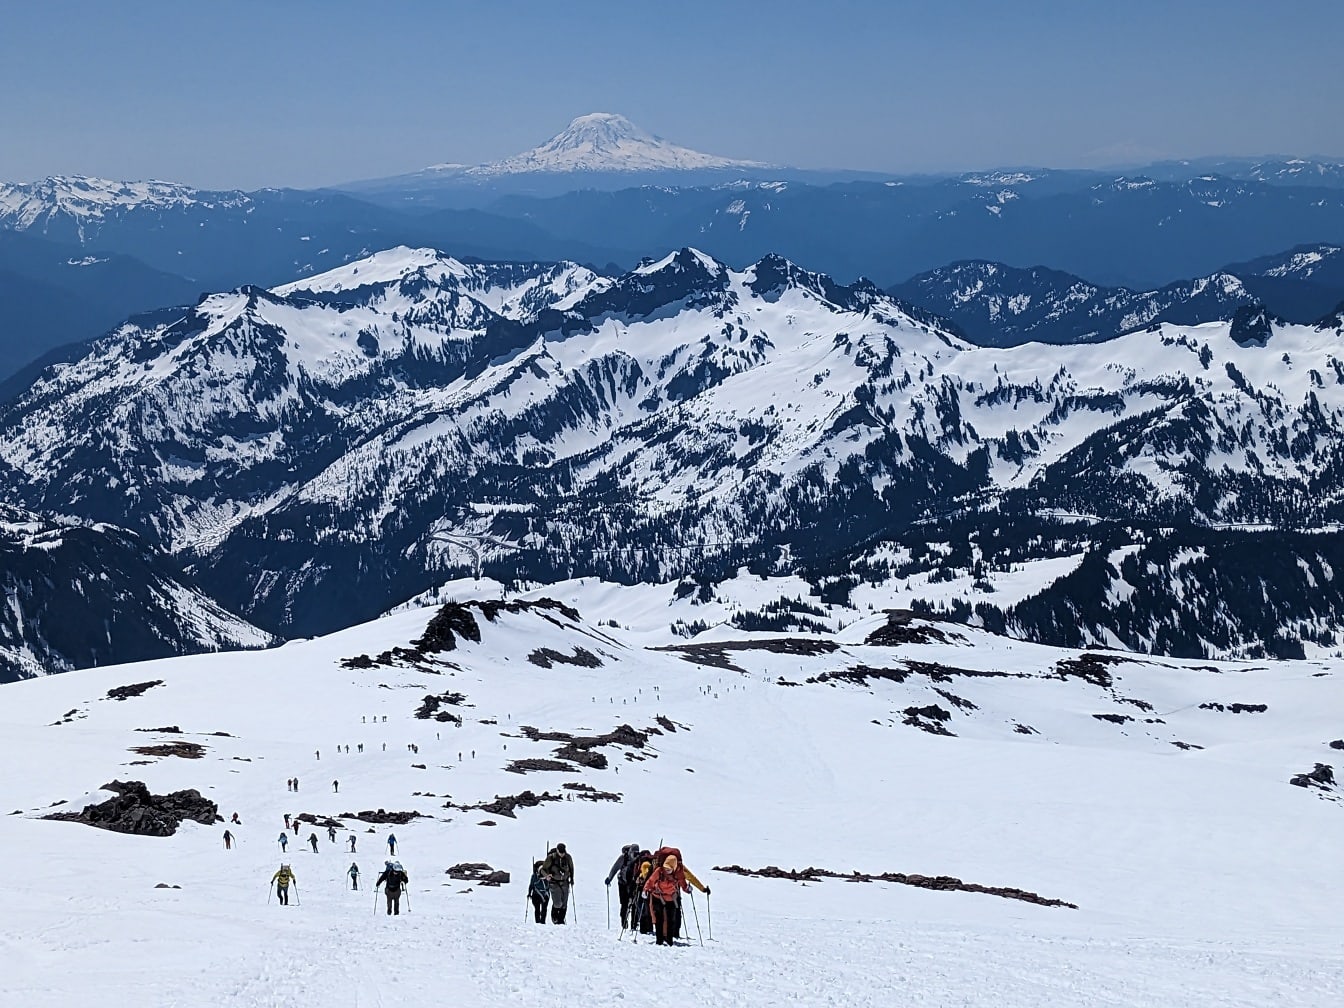 Esquiadores alpinistas escalando en el pico nevado de la montaña